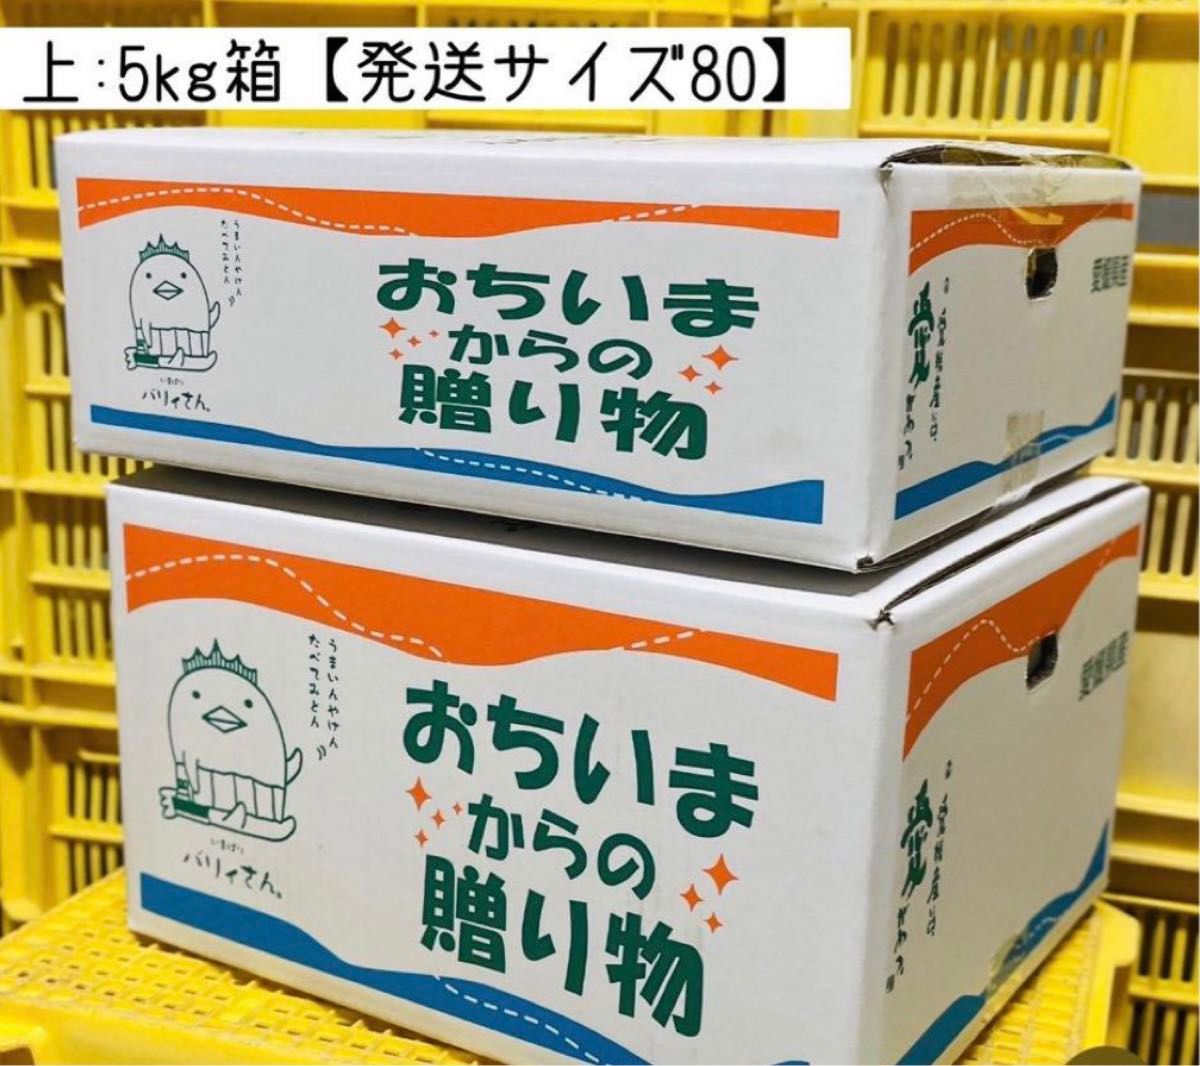 特別栽培の木成レモン 5kg箱 【愛媛県の農家直送】栽培期間中農薬不使用